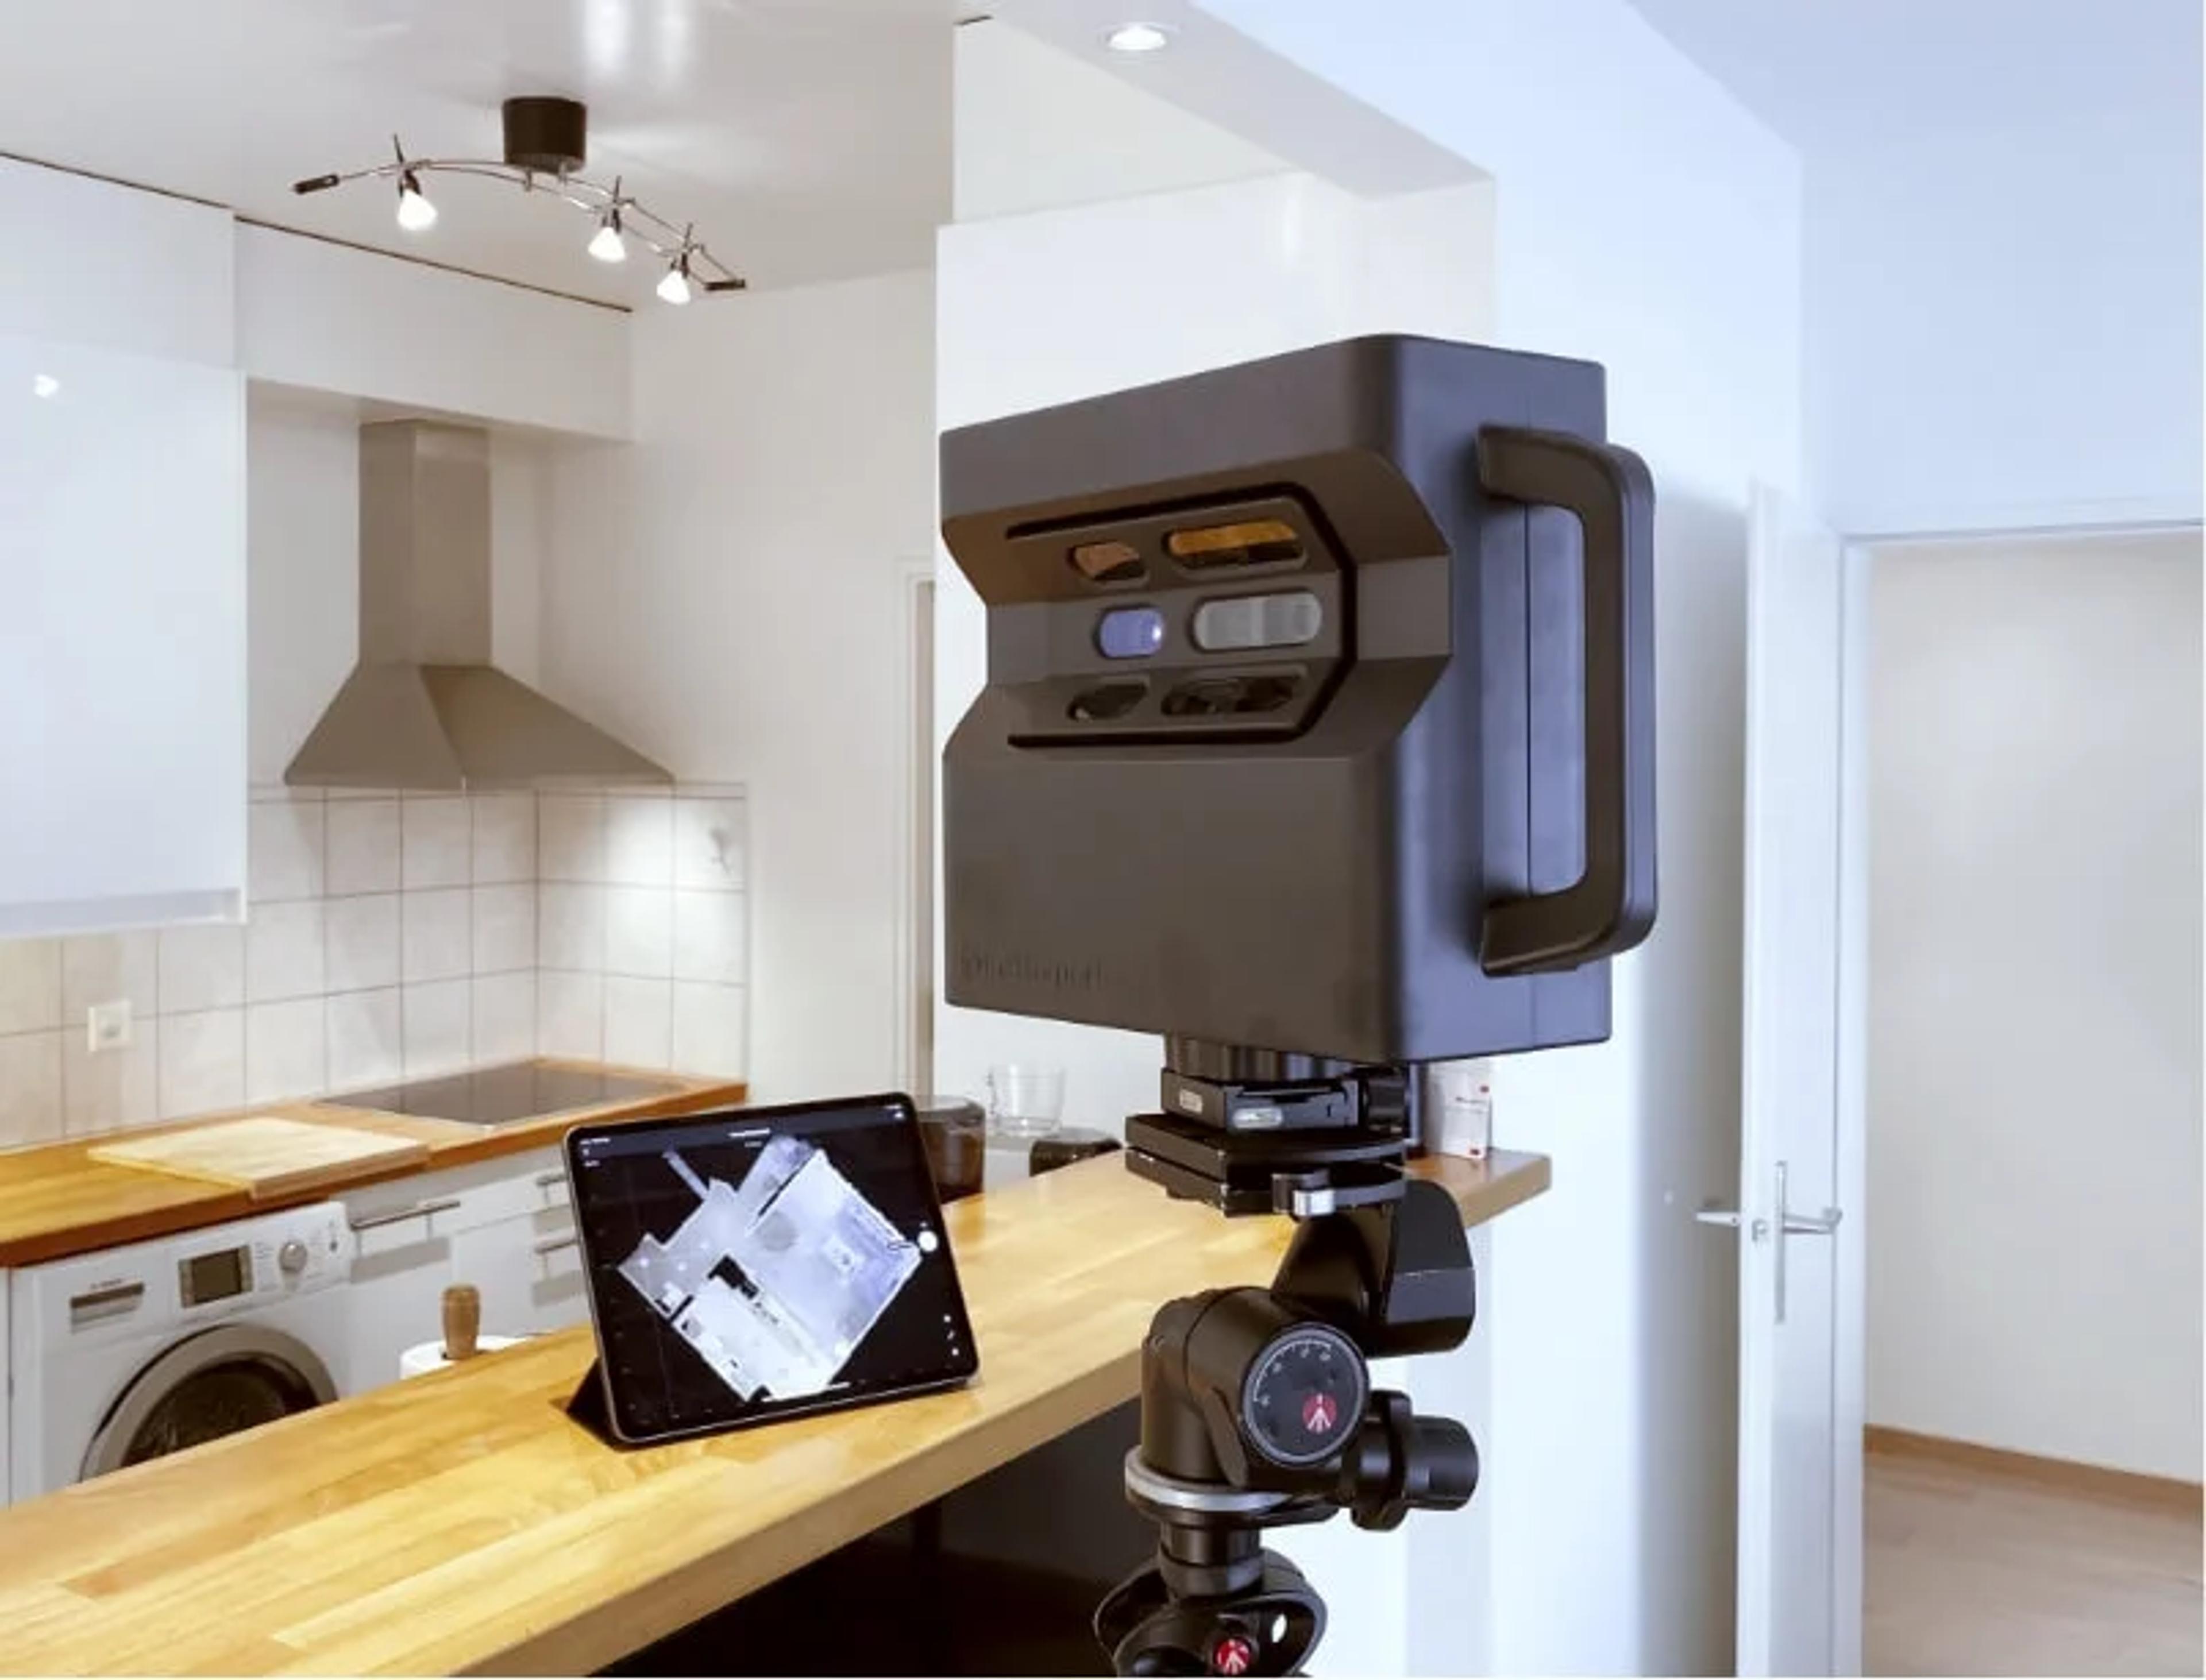 3d scanner in a kitchen